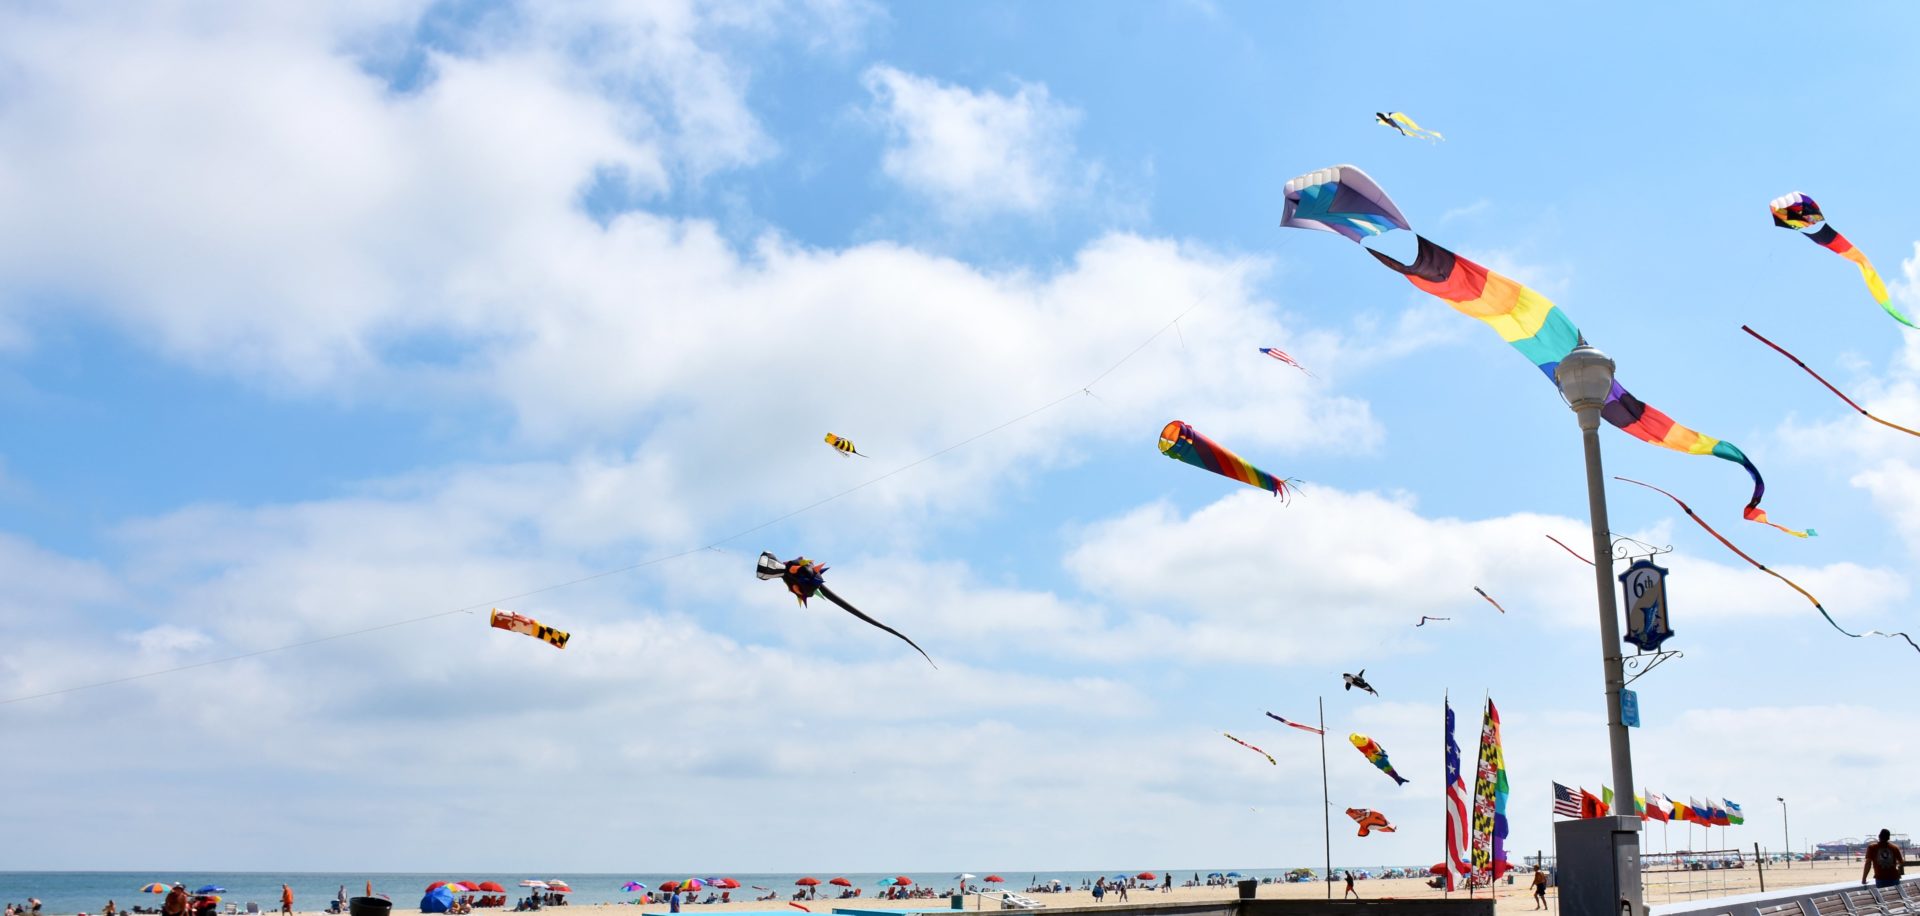 Kite Loft kites flying on Ocean City beach boardwalk.